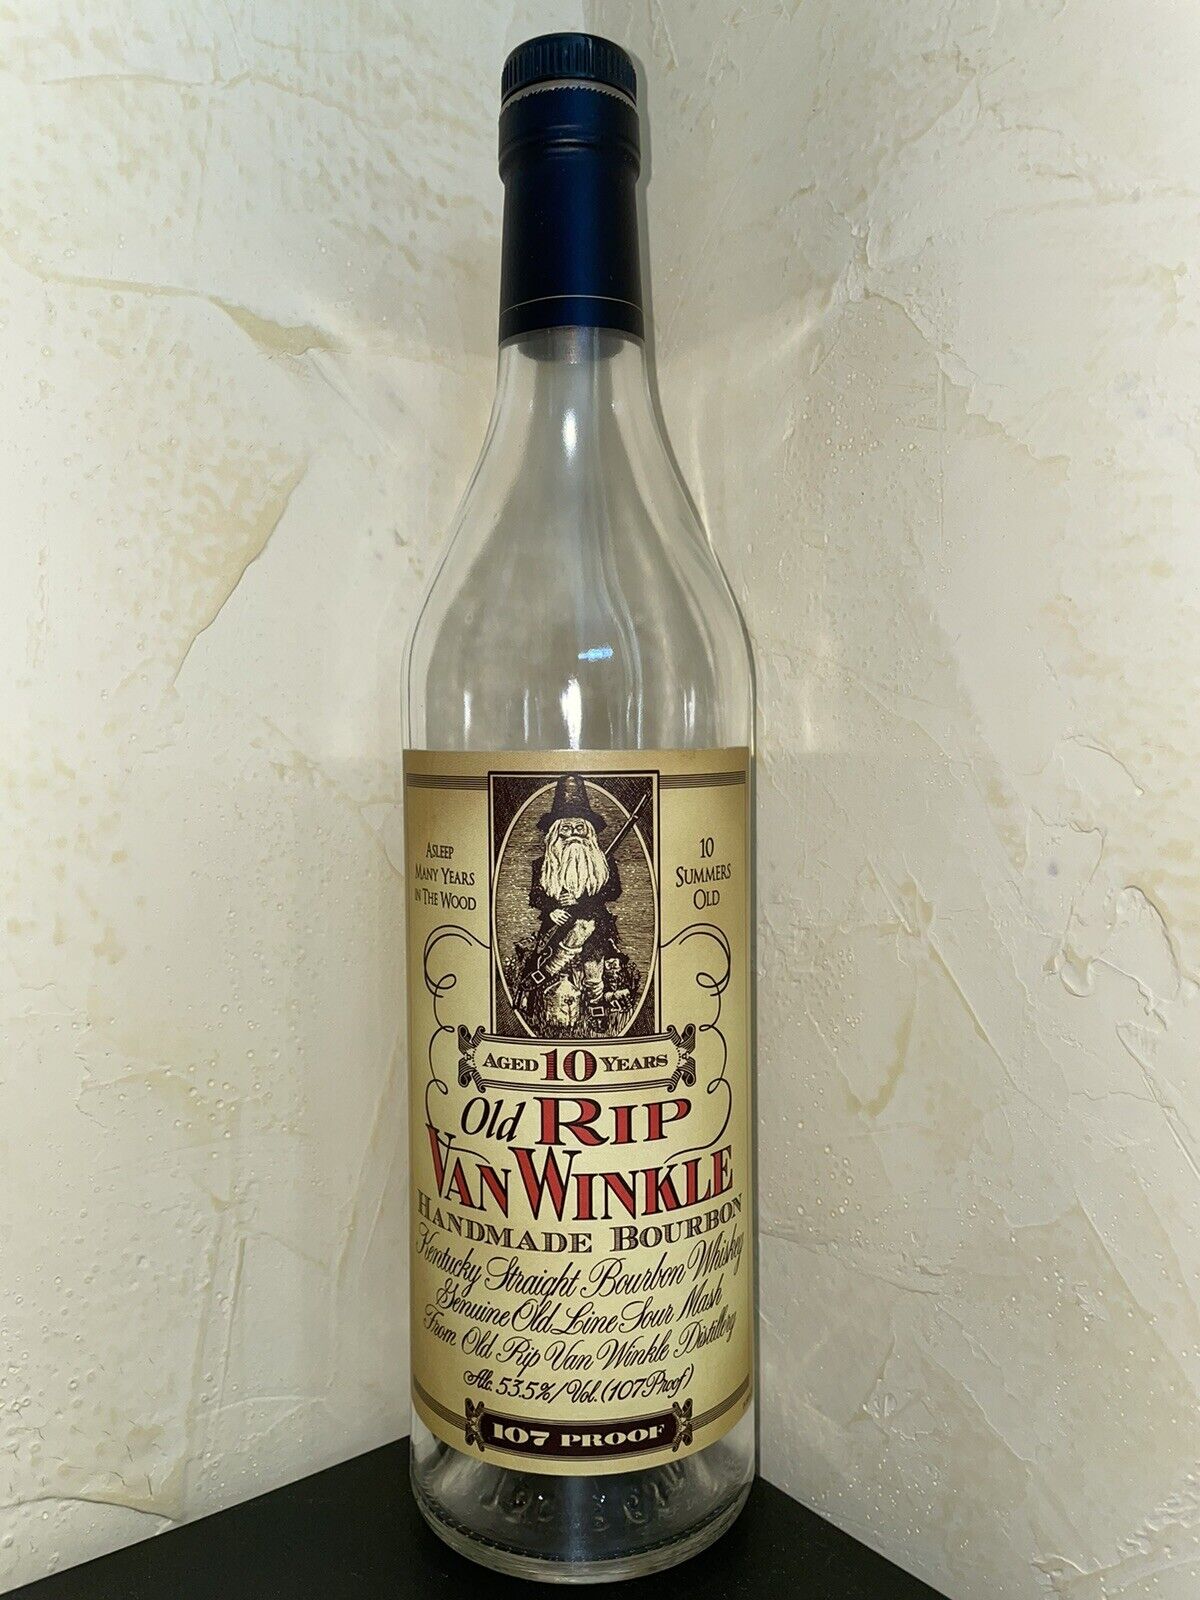 Pappy Van Winkle / Old Rip Van Winkle 10 Year Old (empty bottle)